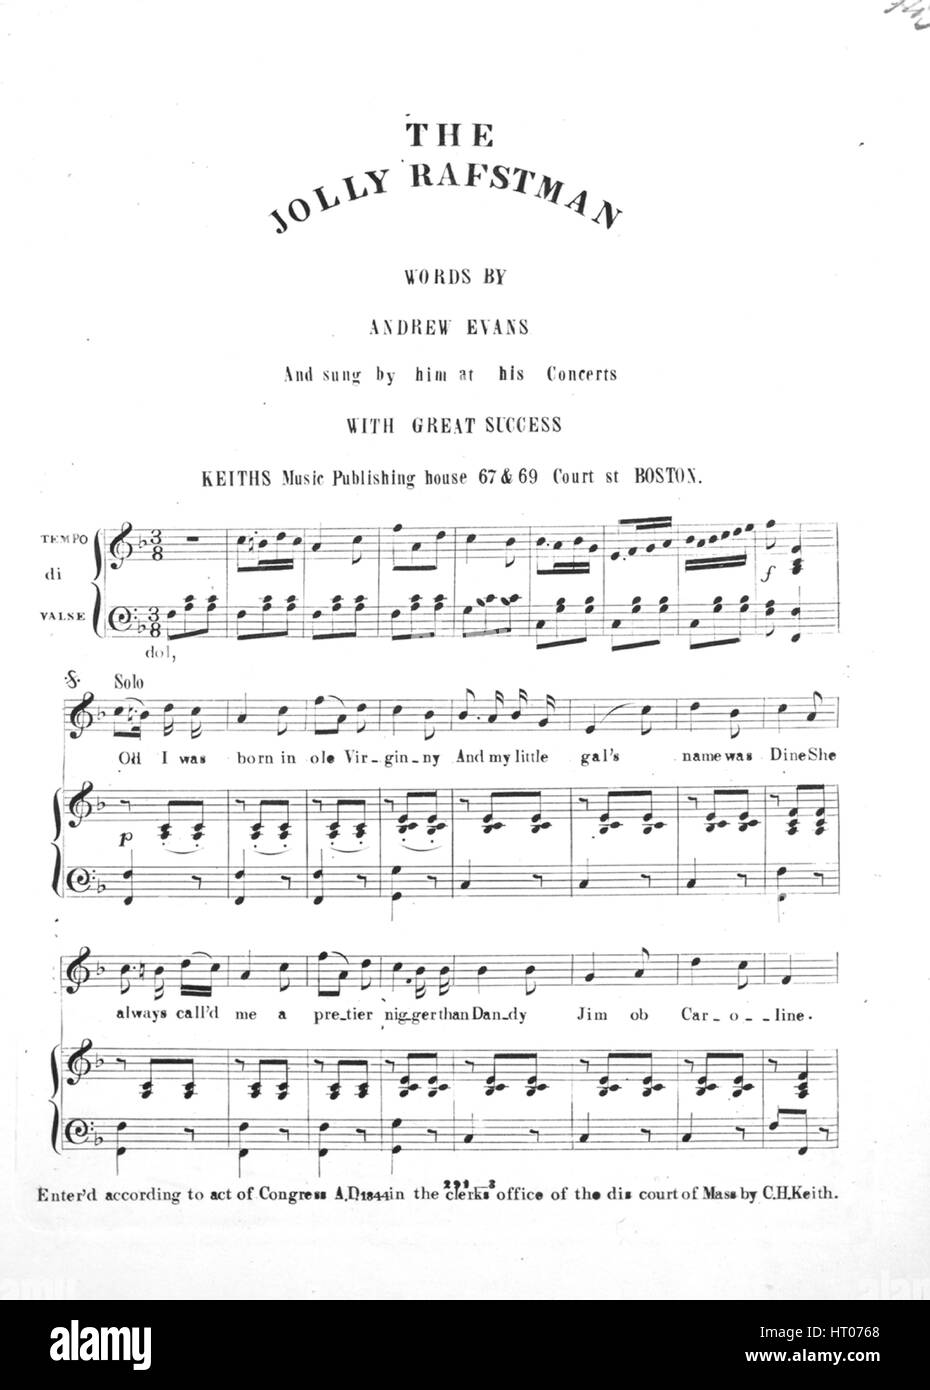 Imagen de cubierta de partituras de la canción "El Jolly Raftsman', con  notas de autoría original leyendo 'palabras por Andrew Evans", Estados  Unidos, 1844. El editor está clasificada como 'Keiths Music Publishing